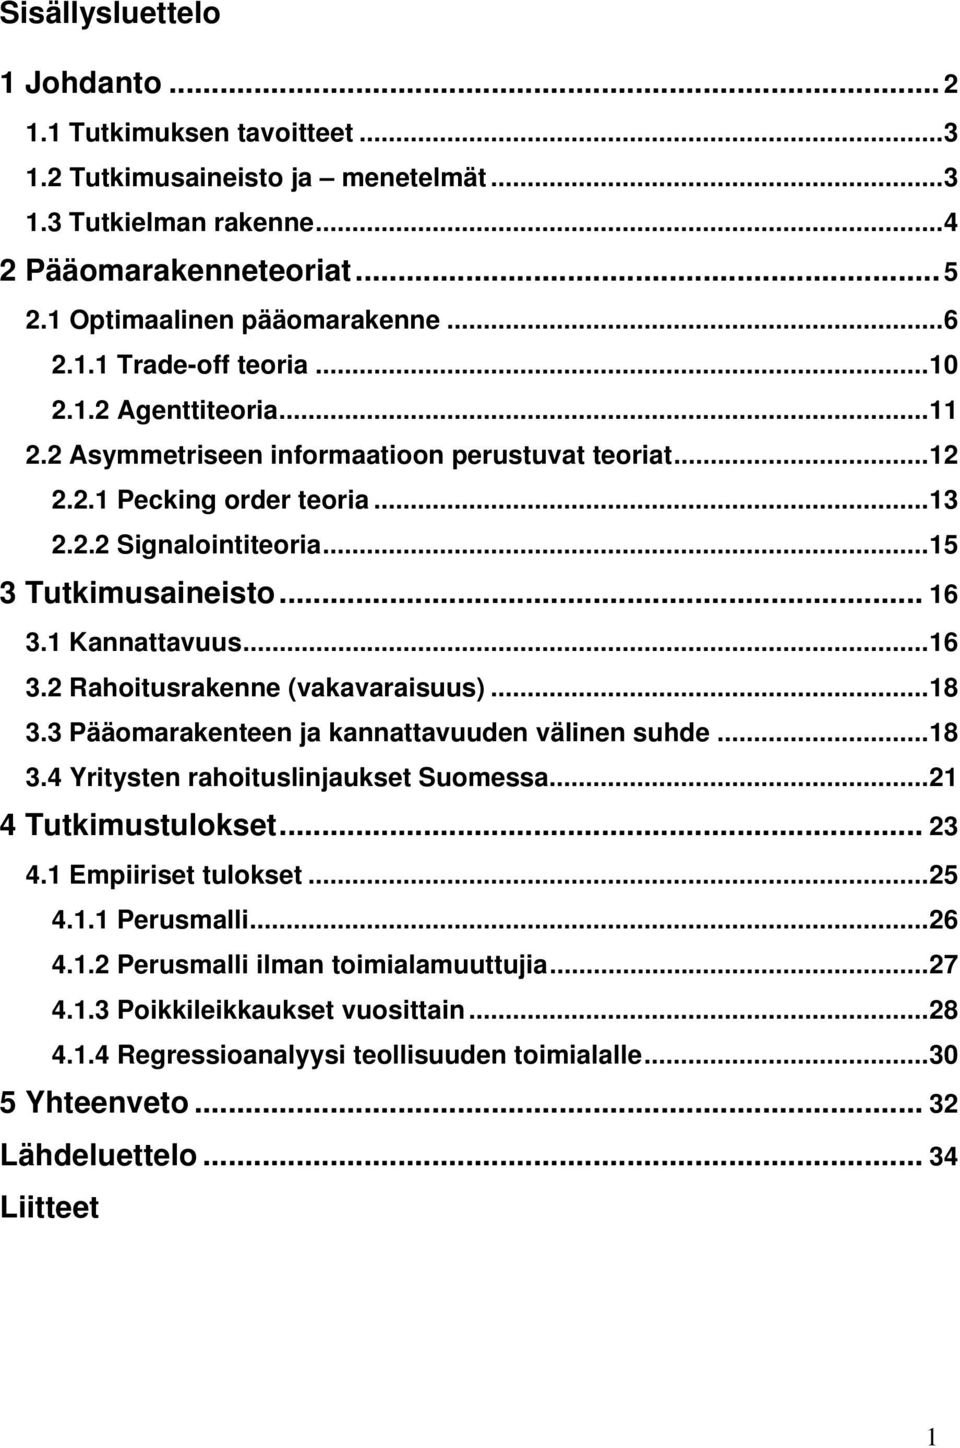 Kannattavuus...6 3.2 Rahoitusrakenne (vakavaraisuus)...8 3.3 Pääomarakenteen ja kannattavuuden välinen suhde...8 3.4 Yritysten rahoituslinjaukset Suomessa...2 4 Tutkimustulokset... 23 4.